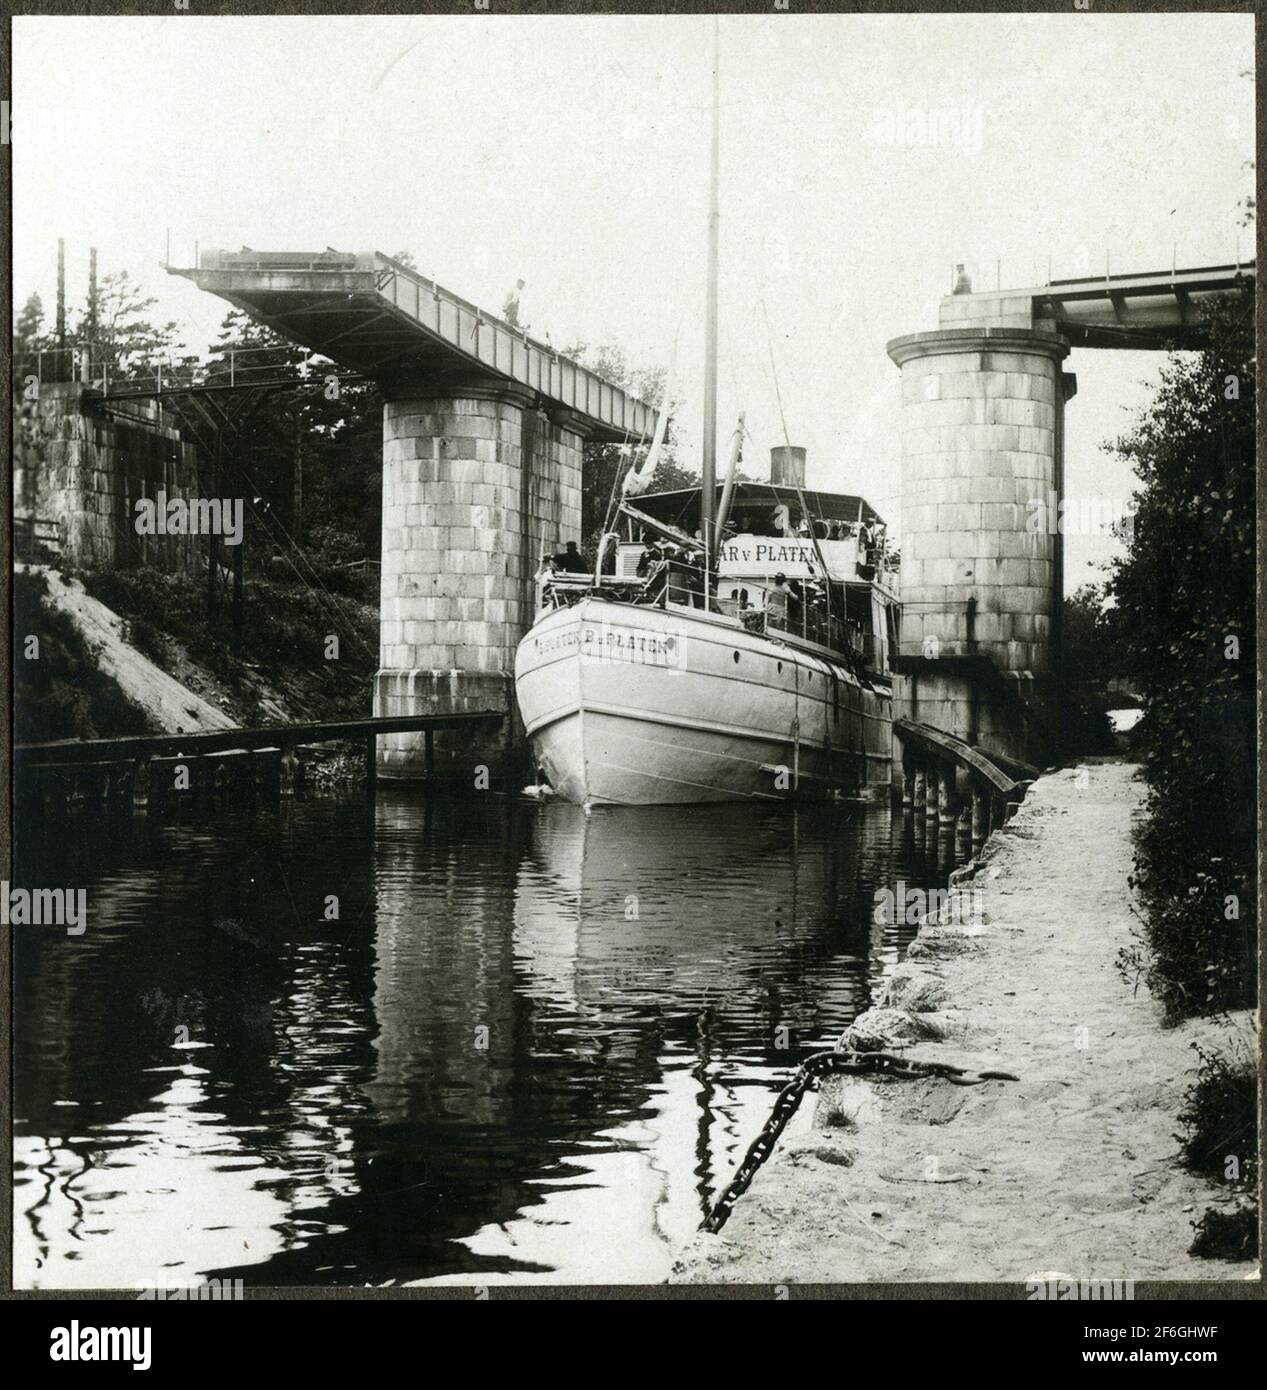 Steamboat B.u.platen era una nave combinata passeggeri e cargo. Costruito nel 1871 e ha ricevuto il nome dal creatore del canale Göta Baltzar von platen. Foto Stock